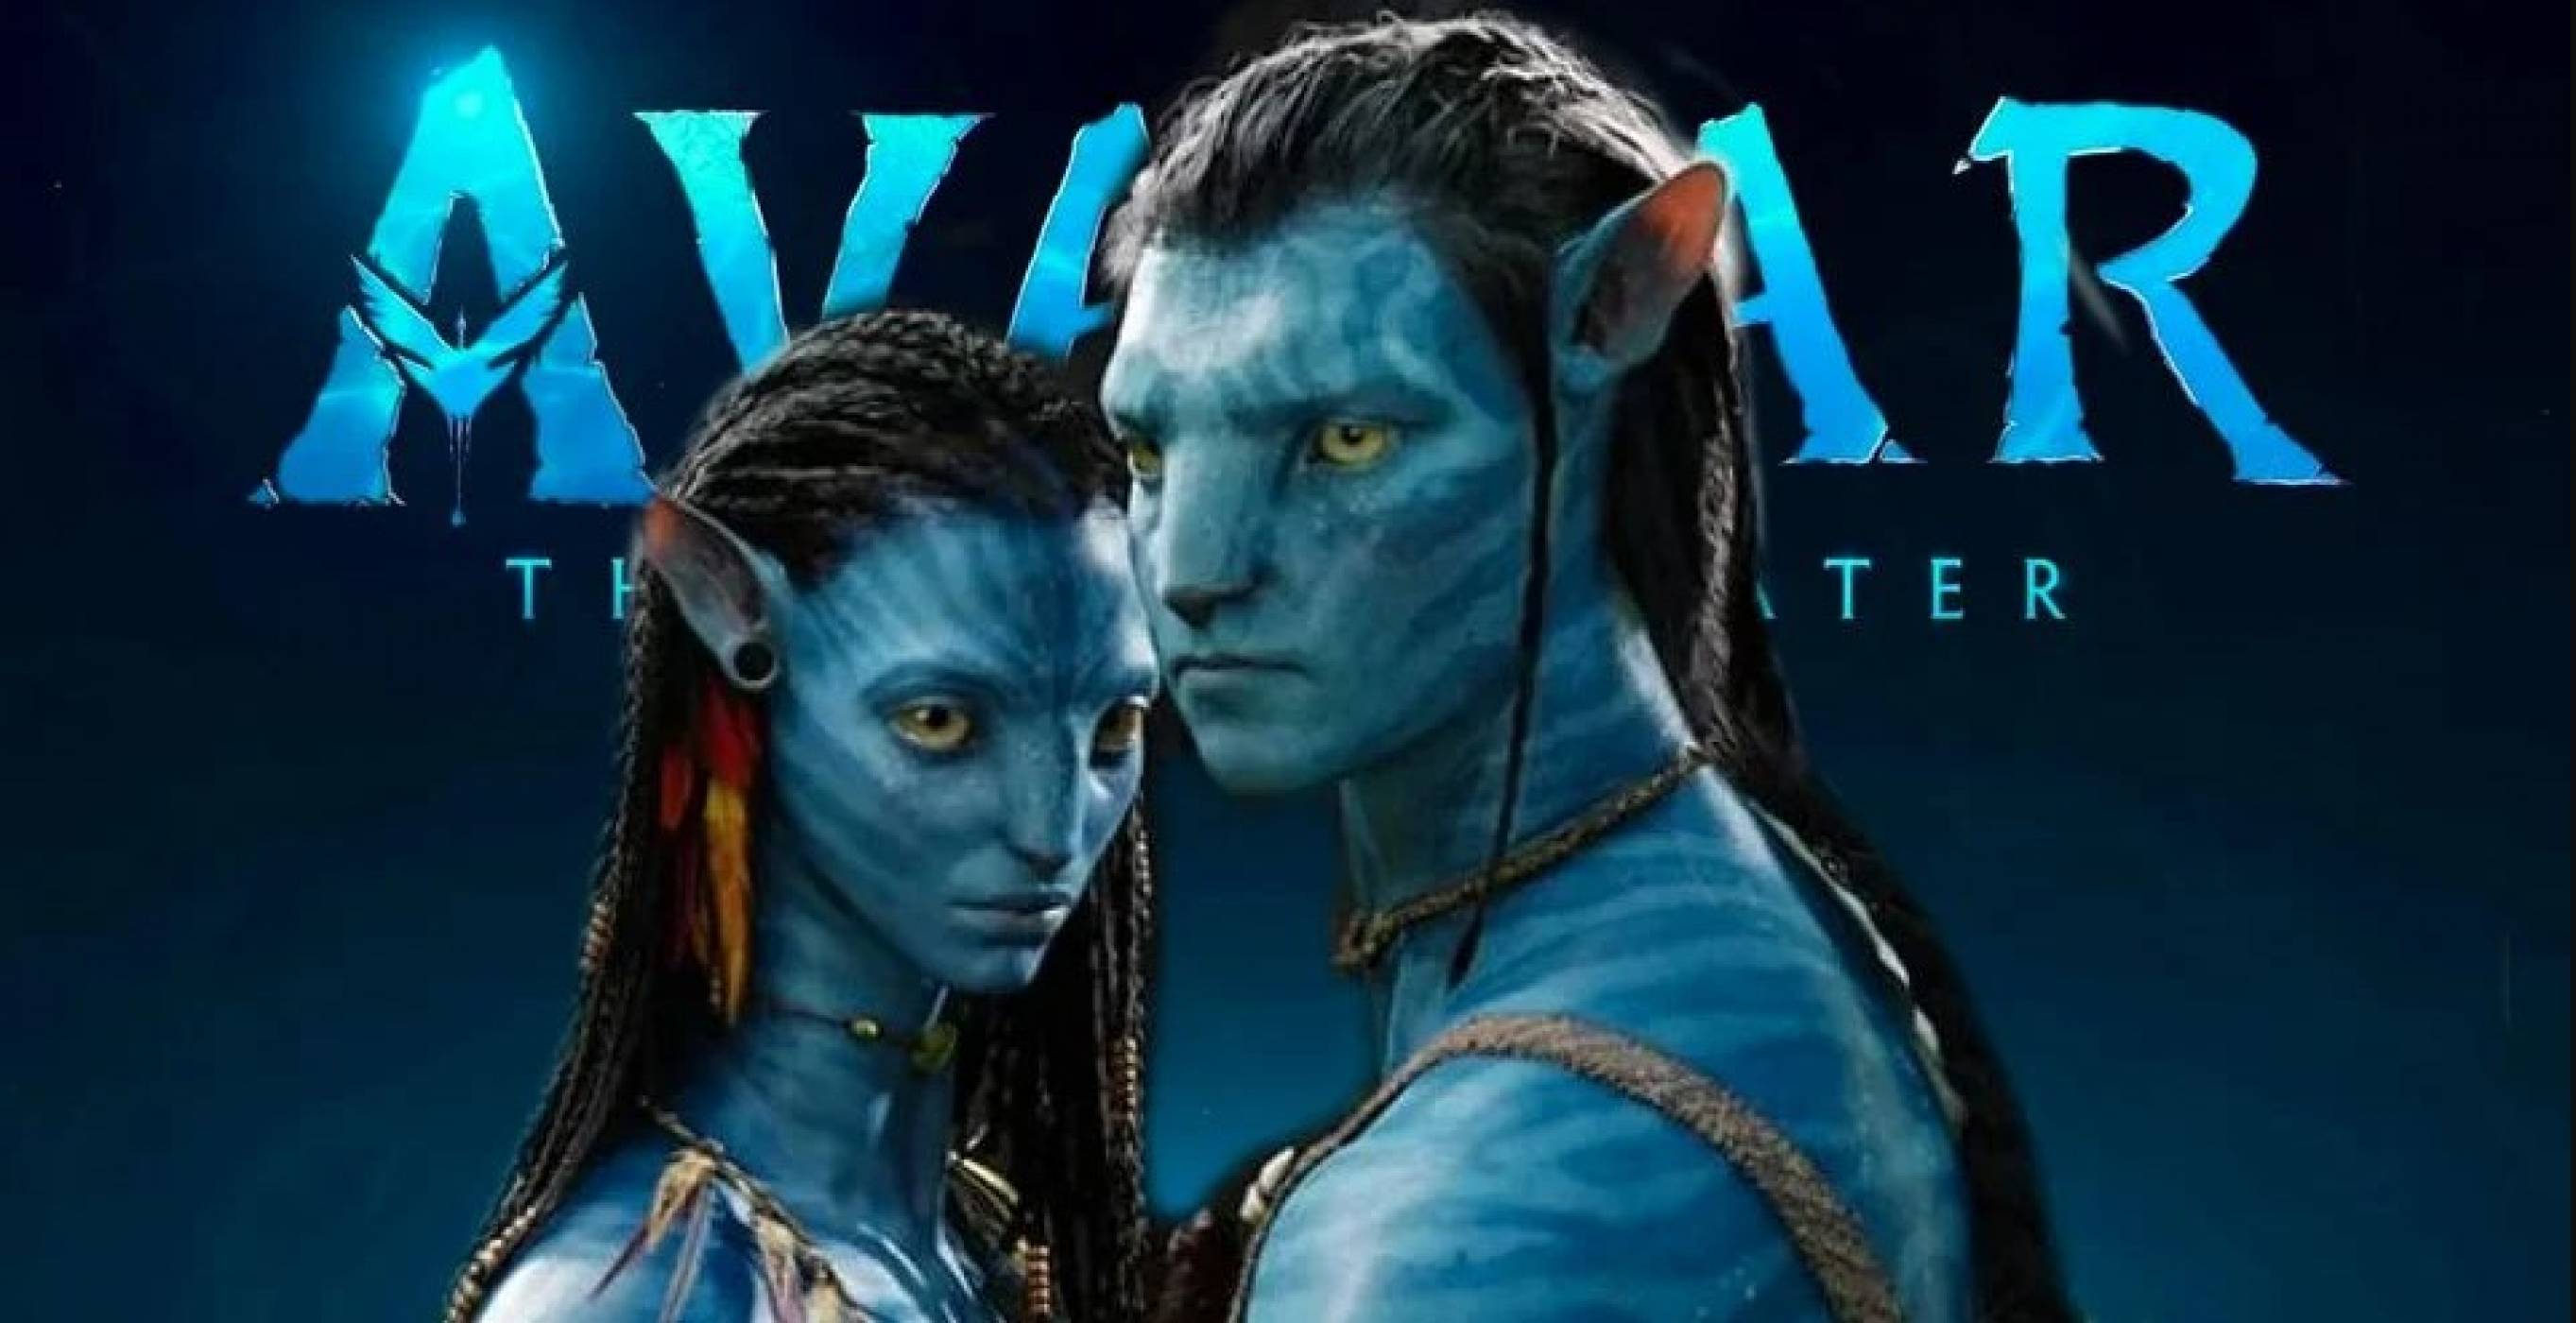 Първият трейлър на Avatar: The Way of Water е тук (ВИДЕО)